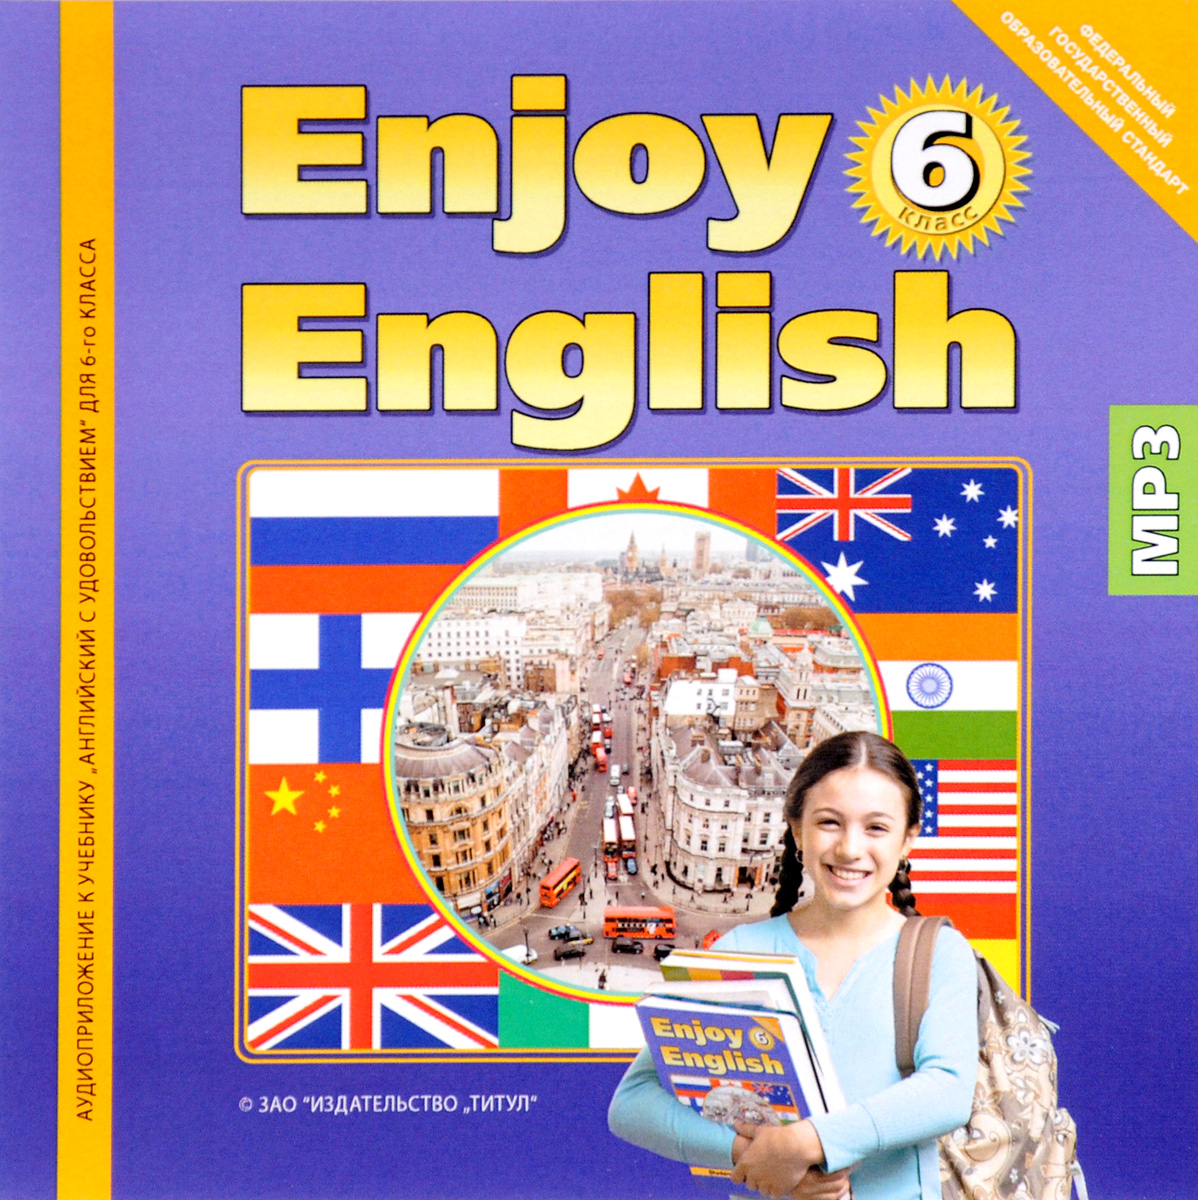 Английский энджой инглиш 5 класс. Enjoy English 6 класс. Учебник по английскому языку. Английский язык. Учебник. Enjoy English учебник.